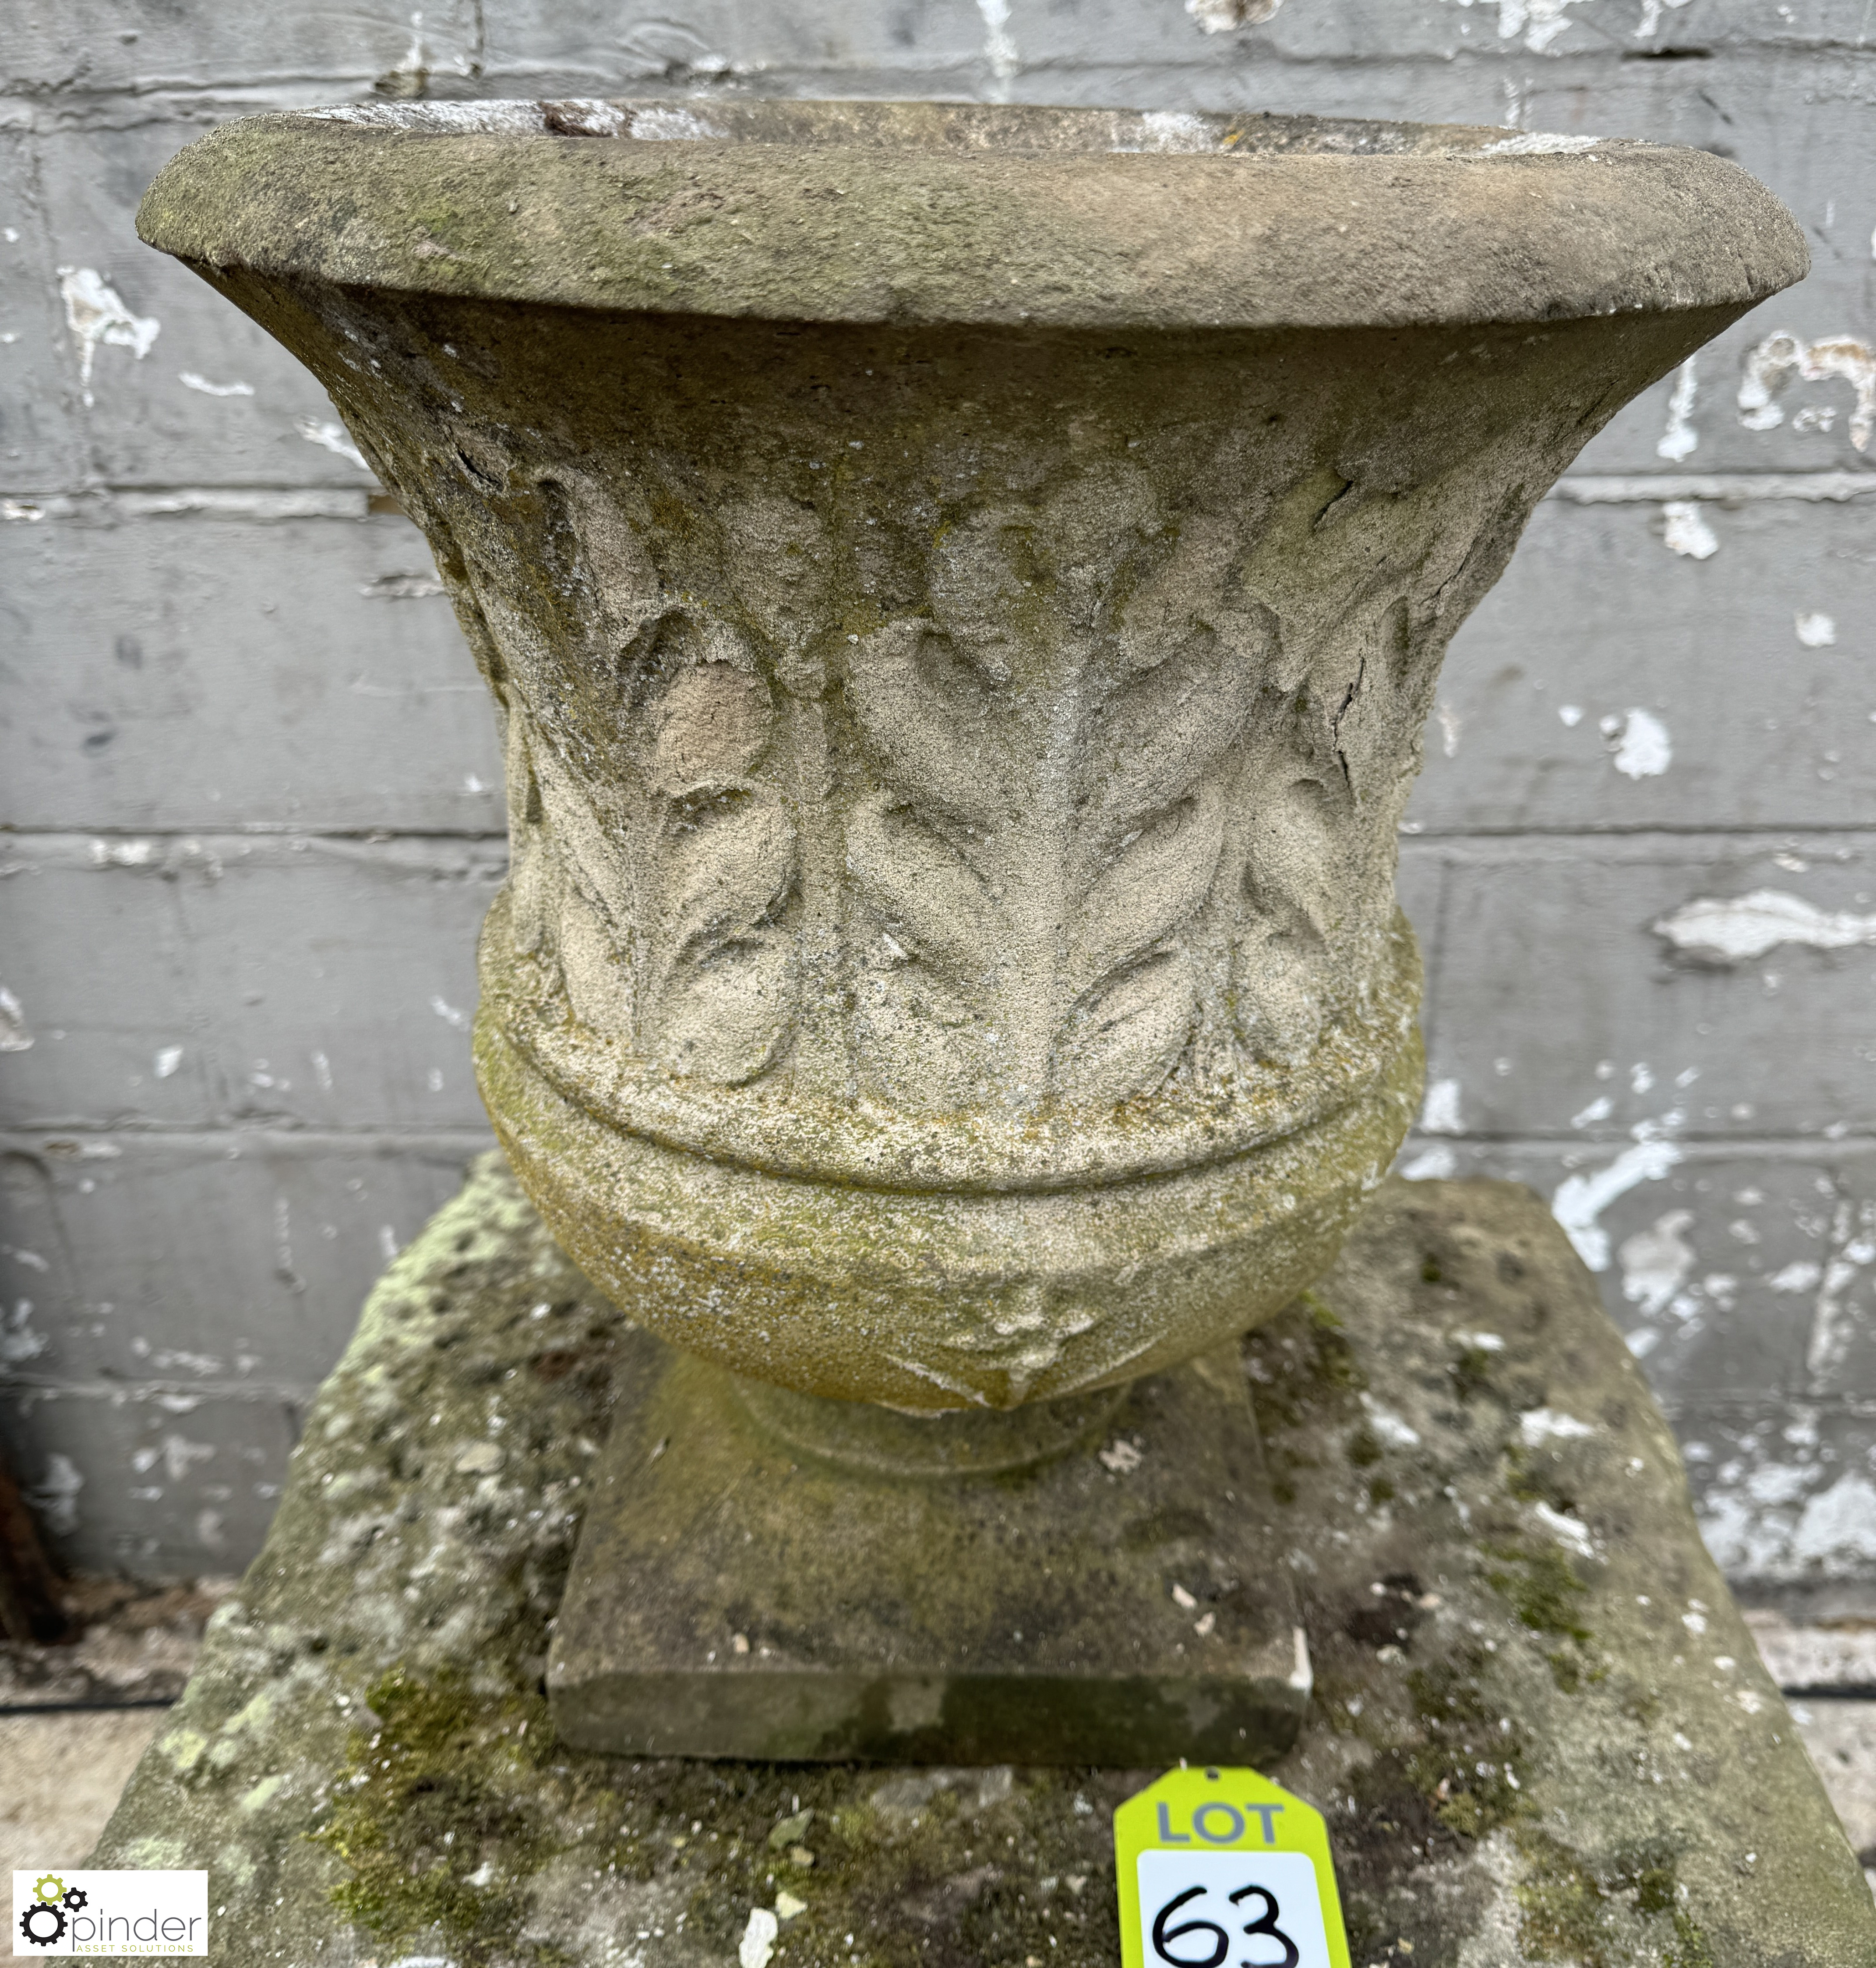 Reconstituted stone Garden Urn/Planter, 430mm diameter x 470mm